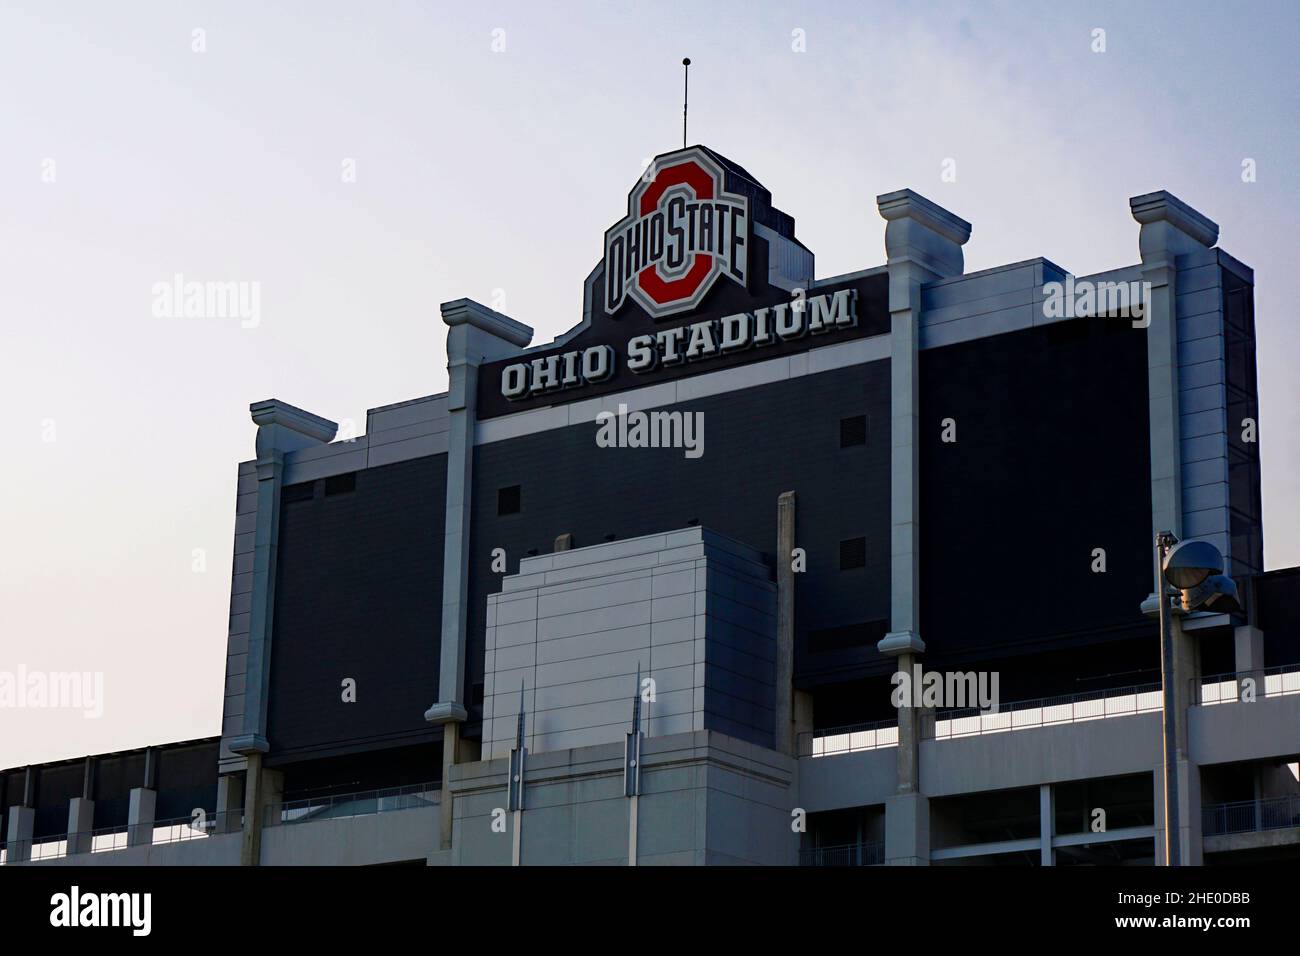 Panneau de l'Ohio State University sur le stade Ohio. Banque D'Images